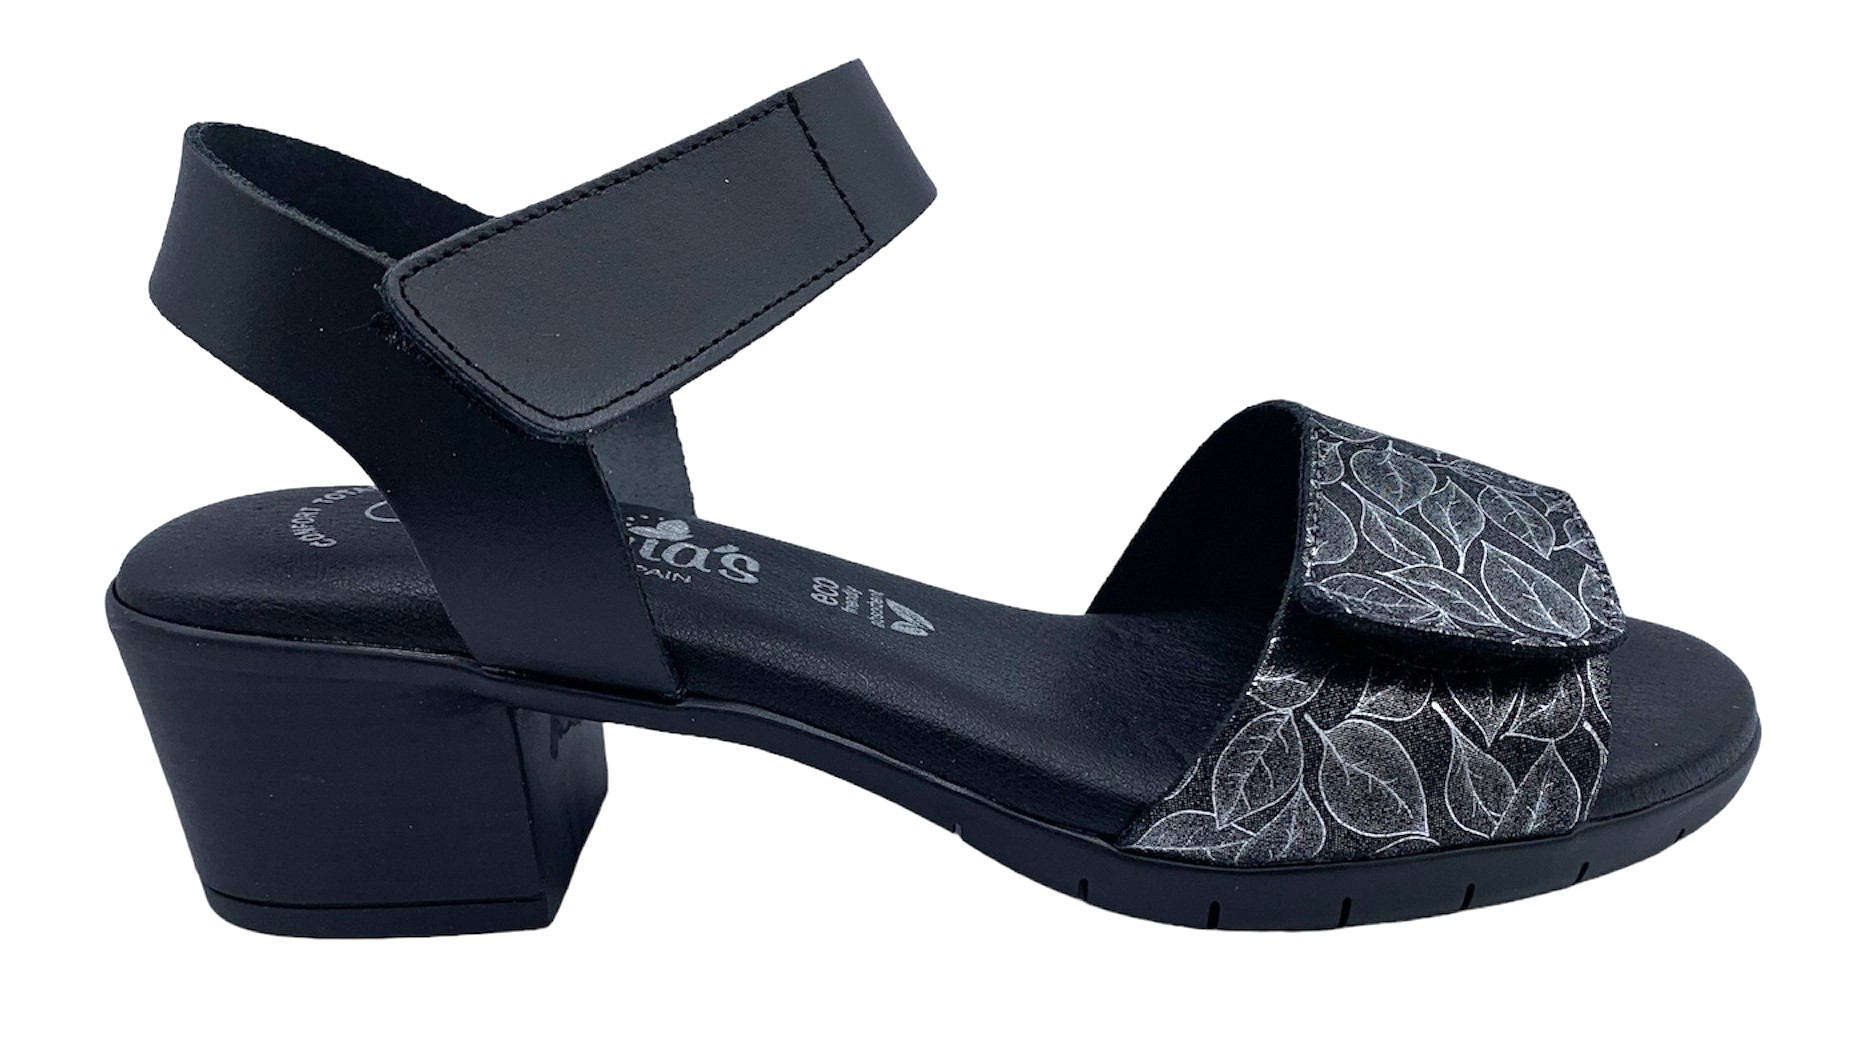 Dámské kožené sandále na podpatku MISSTIC 1172 černé Velikost: 40 (EU)